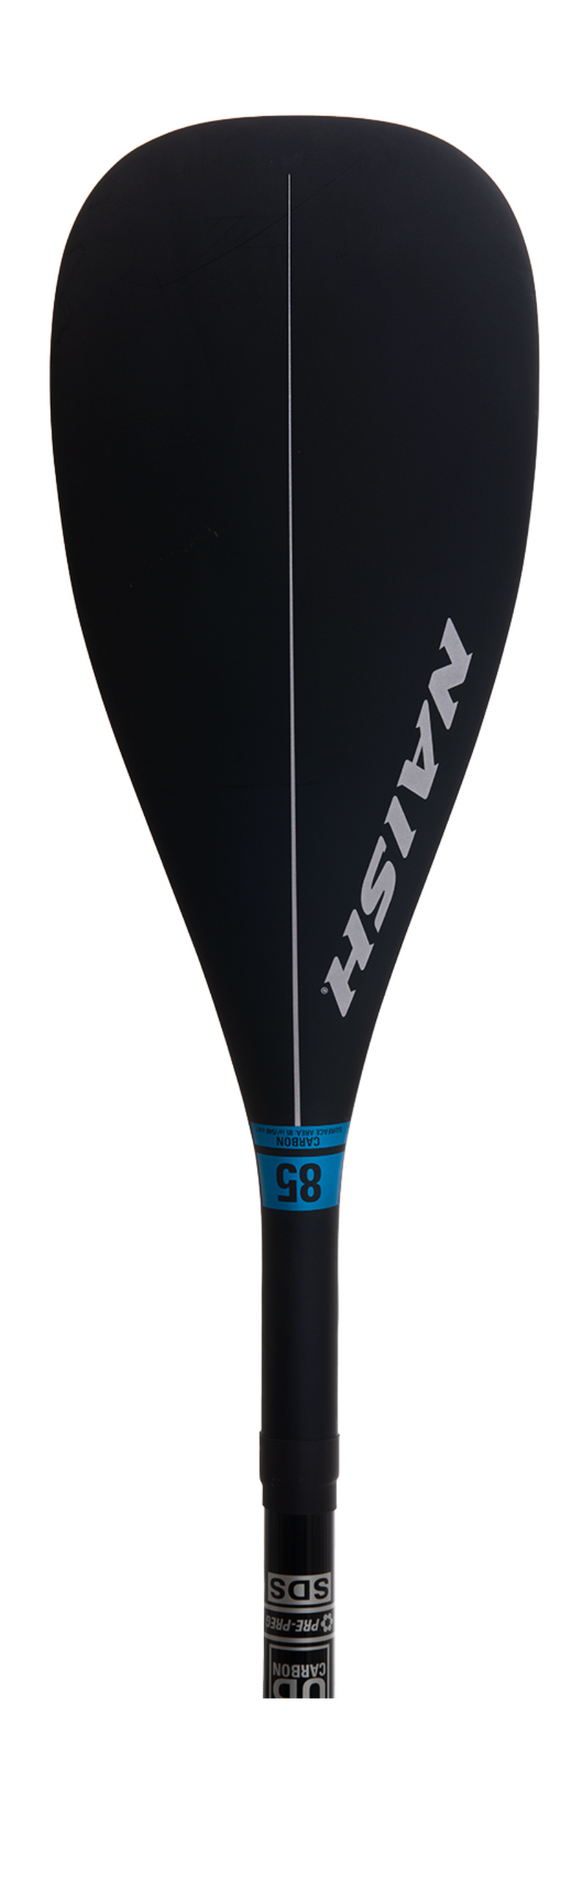 Naish S26 Carbon 85 Vario paddle